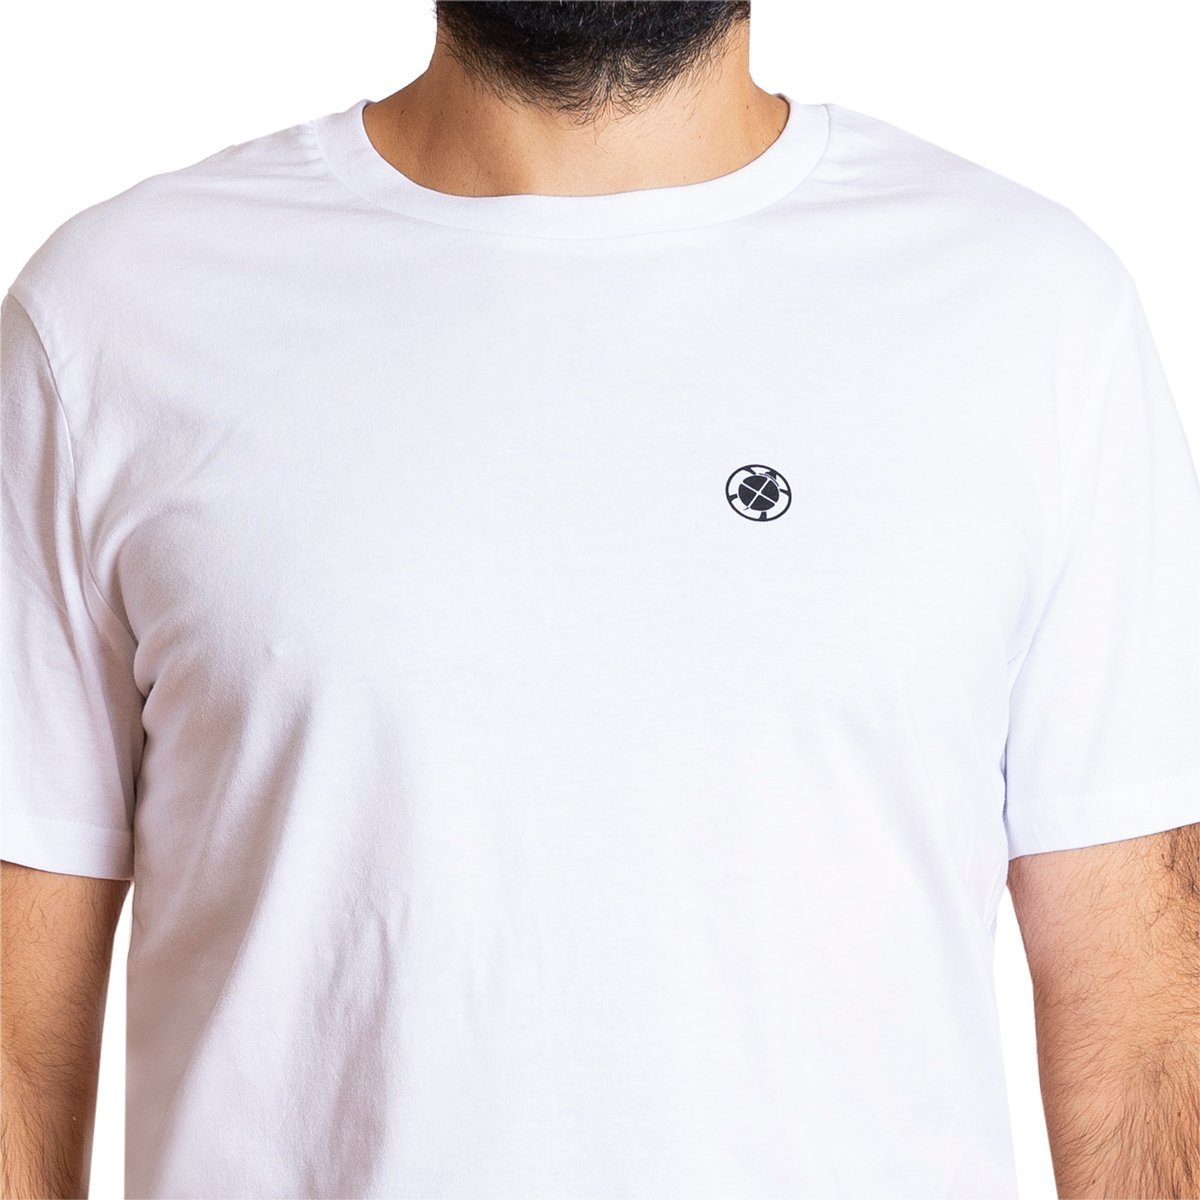 Bio fair T-Shirt weiß gehandelter Baumwolle aus Herren PANASIAM "Basic" T-Shirt